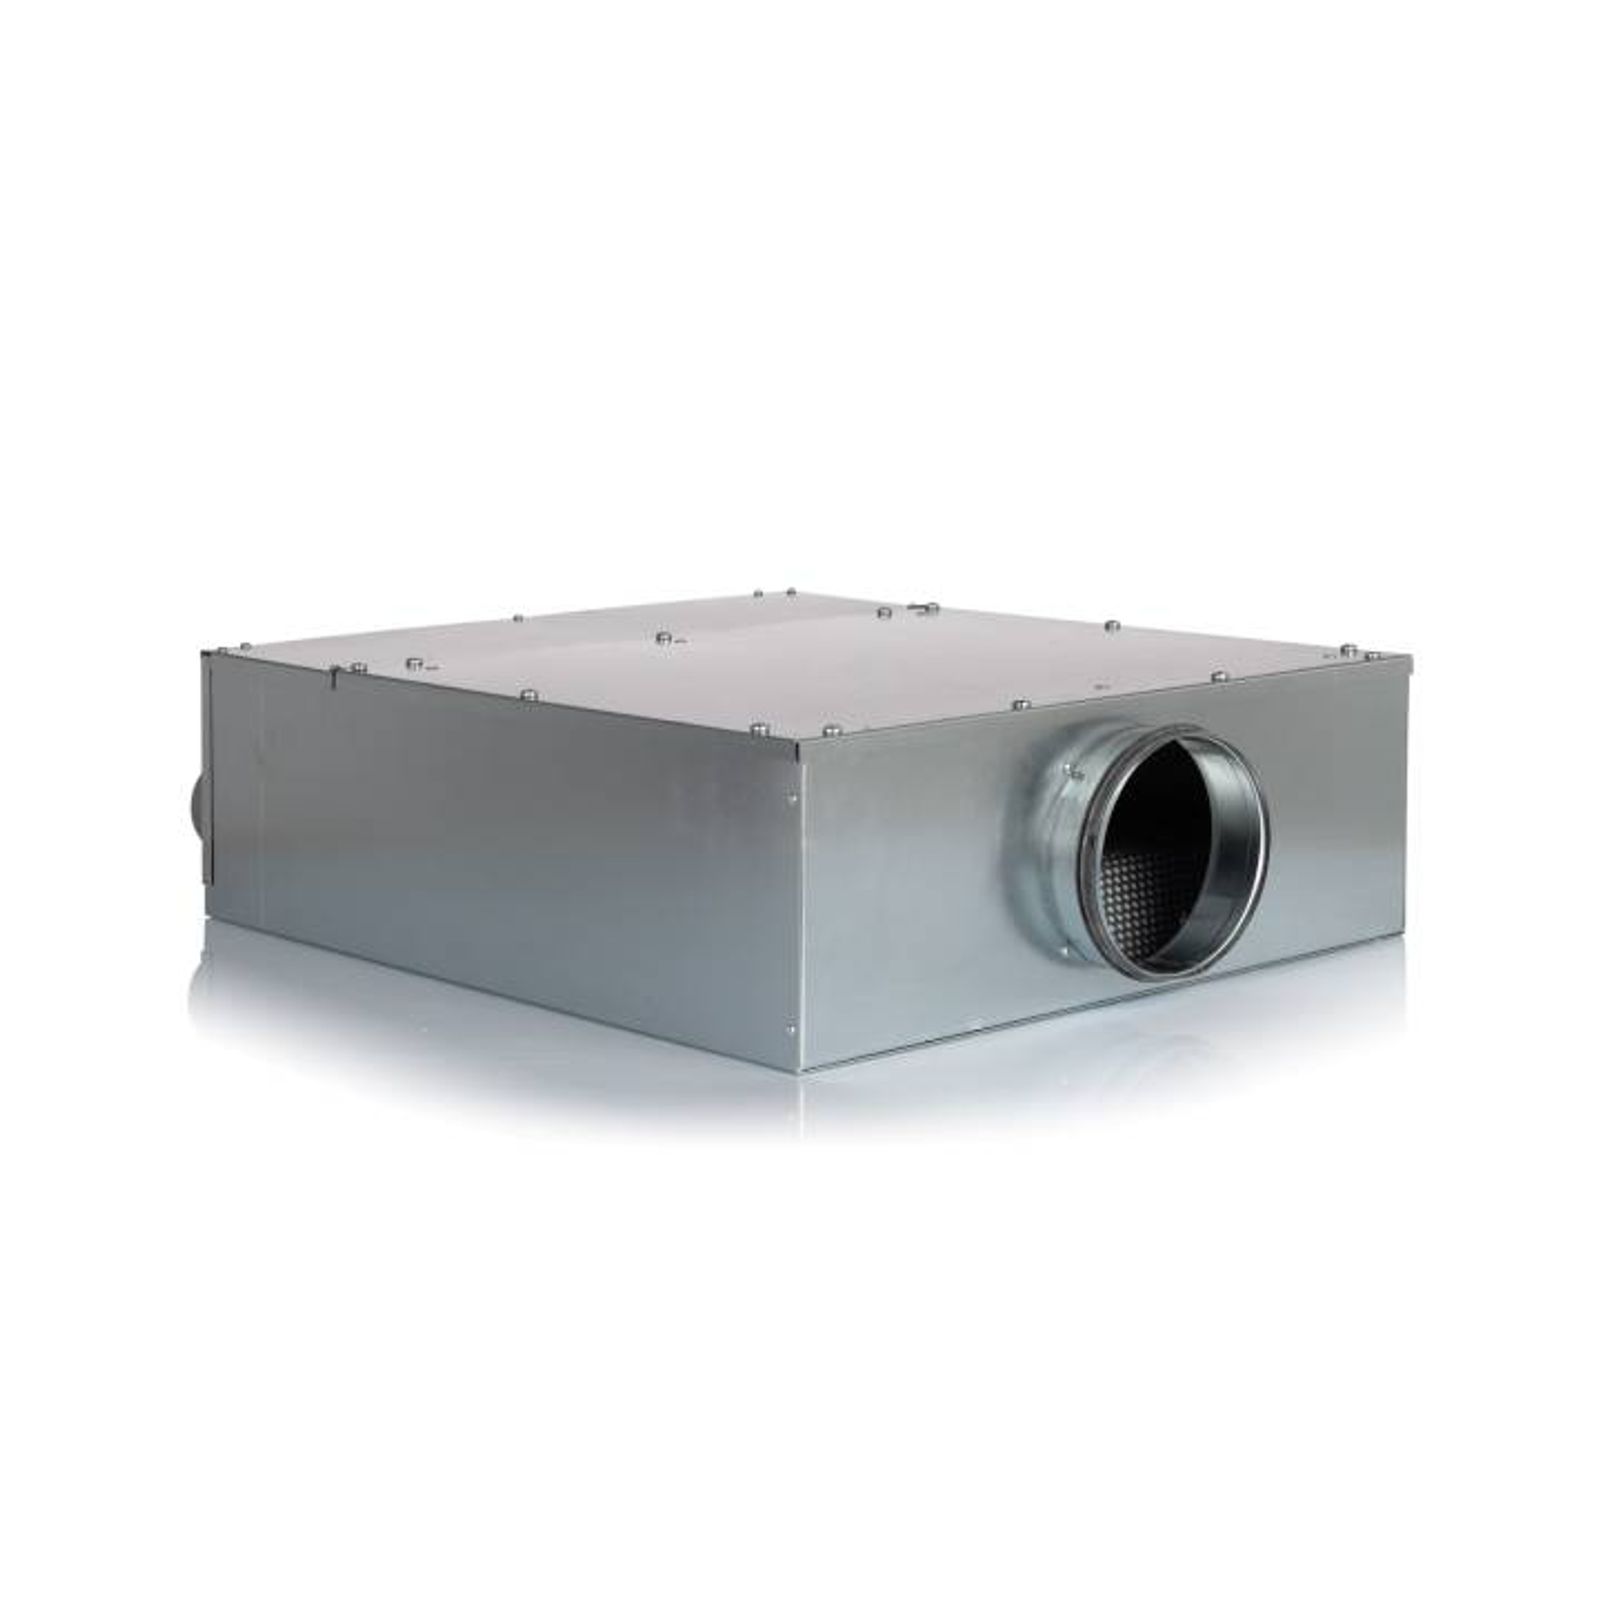 Luftverteiler 10x DN75 für Kunststoff-Flexkanal mit Schalldämpfer DN160